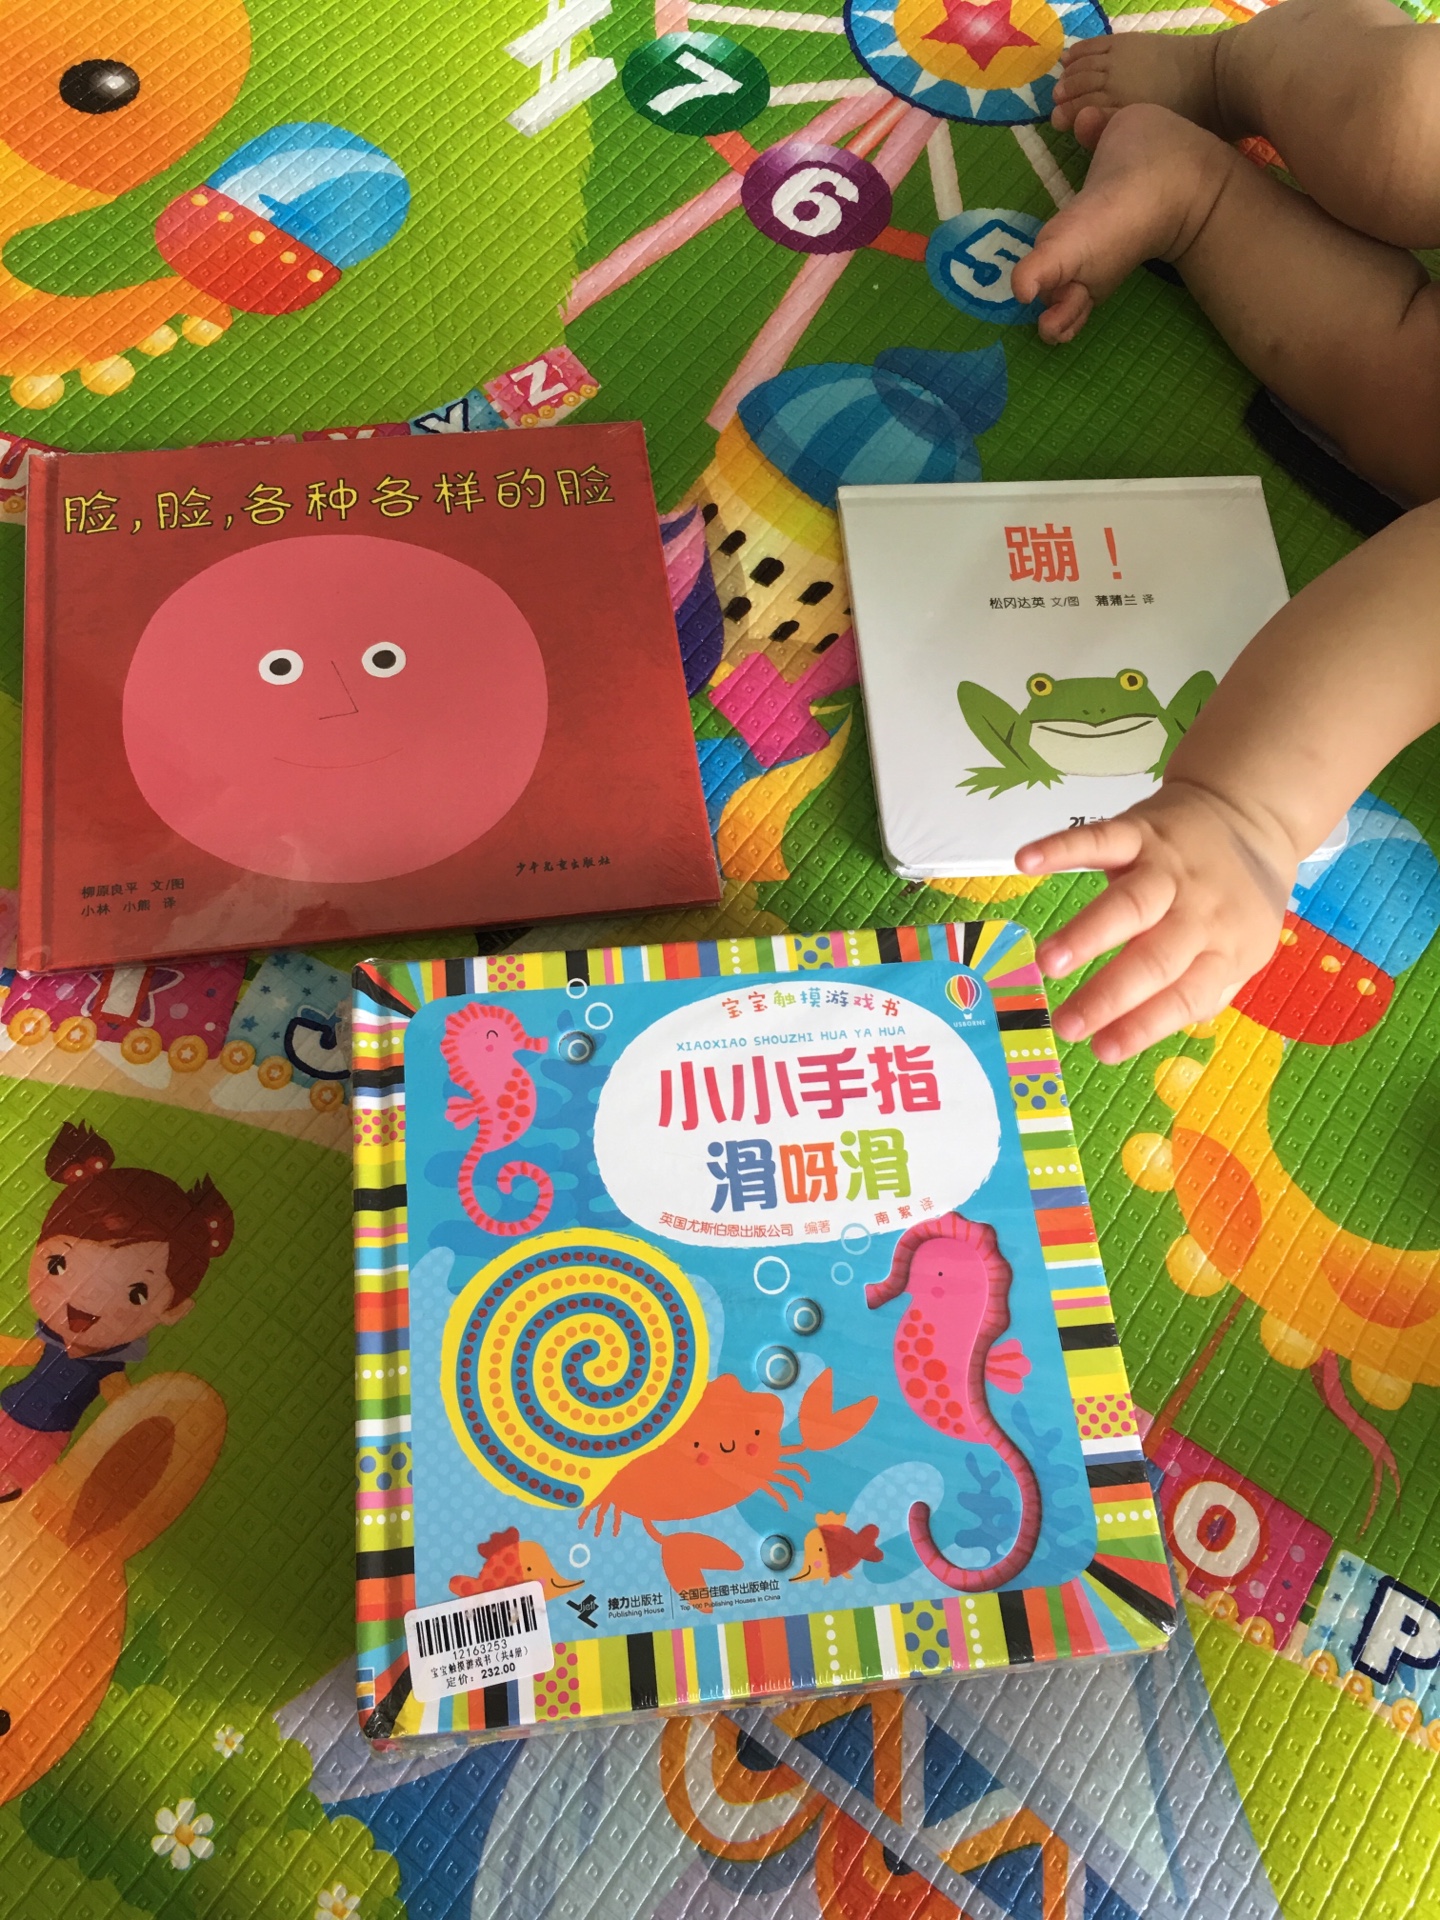 宝宝刚7个月，买来给她作为启蒙阅读的，不指望她现在就能看懂，主要是培养阅读兴趣，爱上看书。这套书的质感真心不错，色彩也很丰富，集触摸与抠洞洞于一身，挺好的